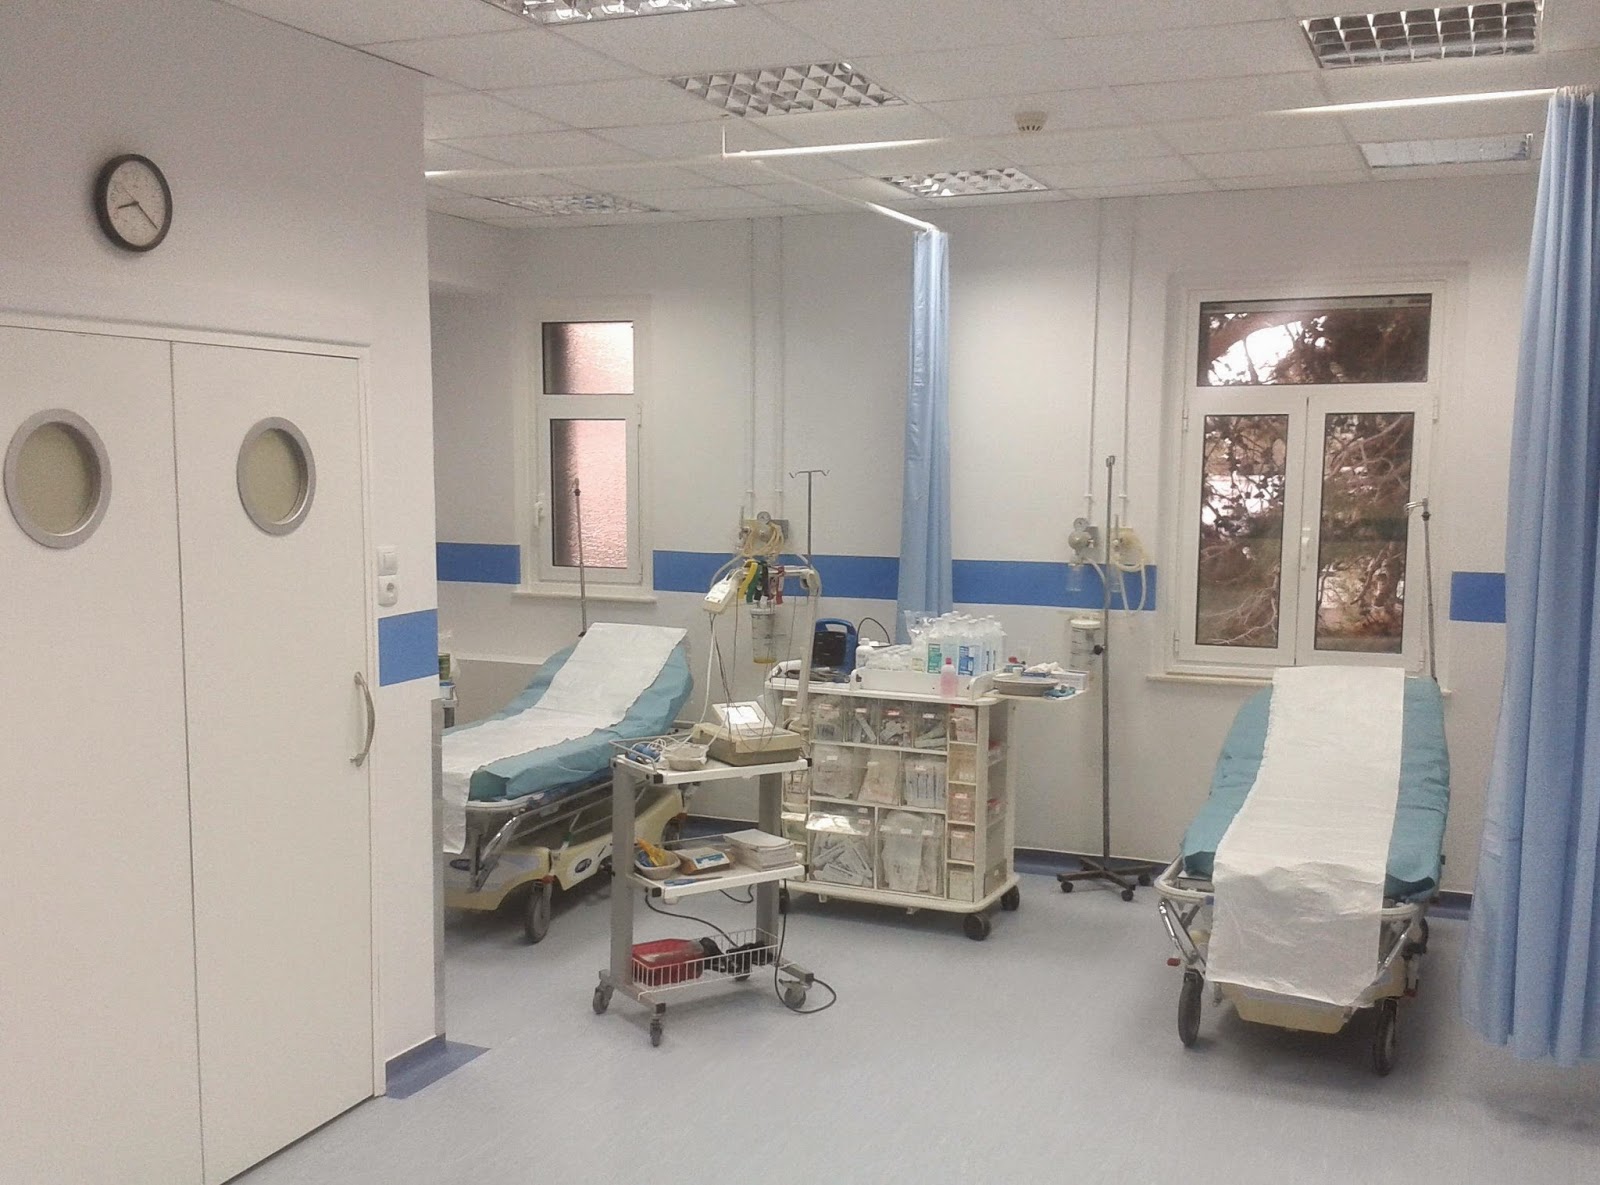 Σε λειτουργία ο νέος χώρος που θα στεγάσει τα επείγοντα περιστατικά του Νοσοκομείου Καρύστου